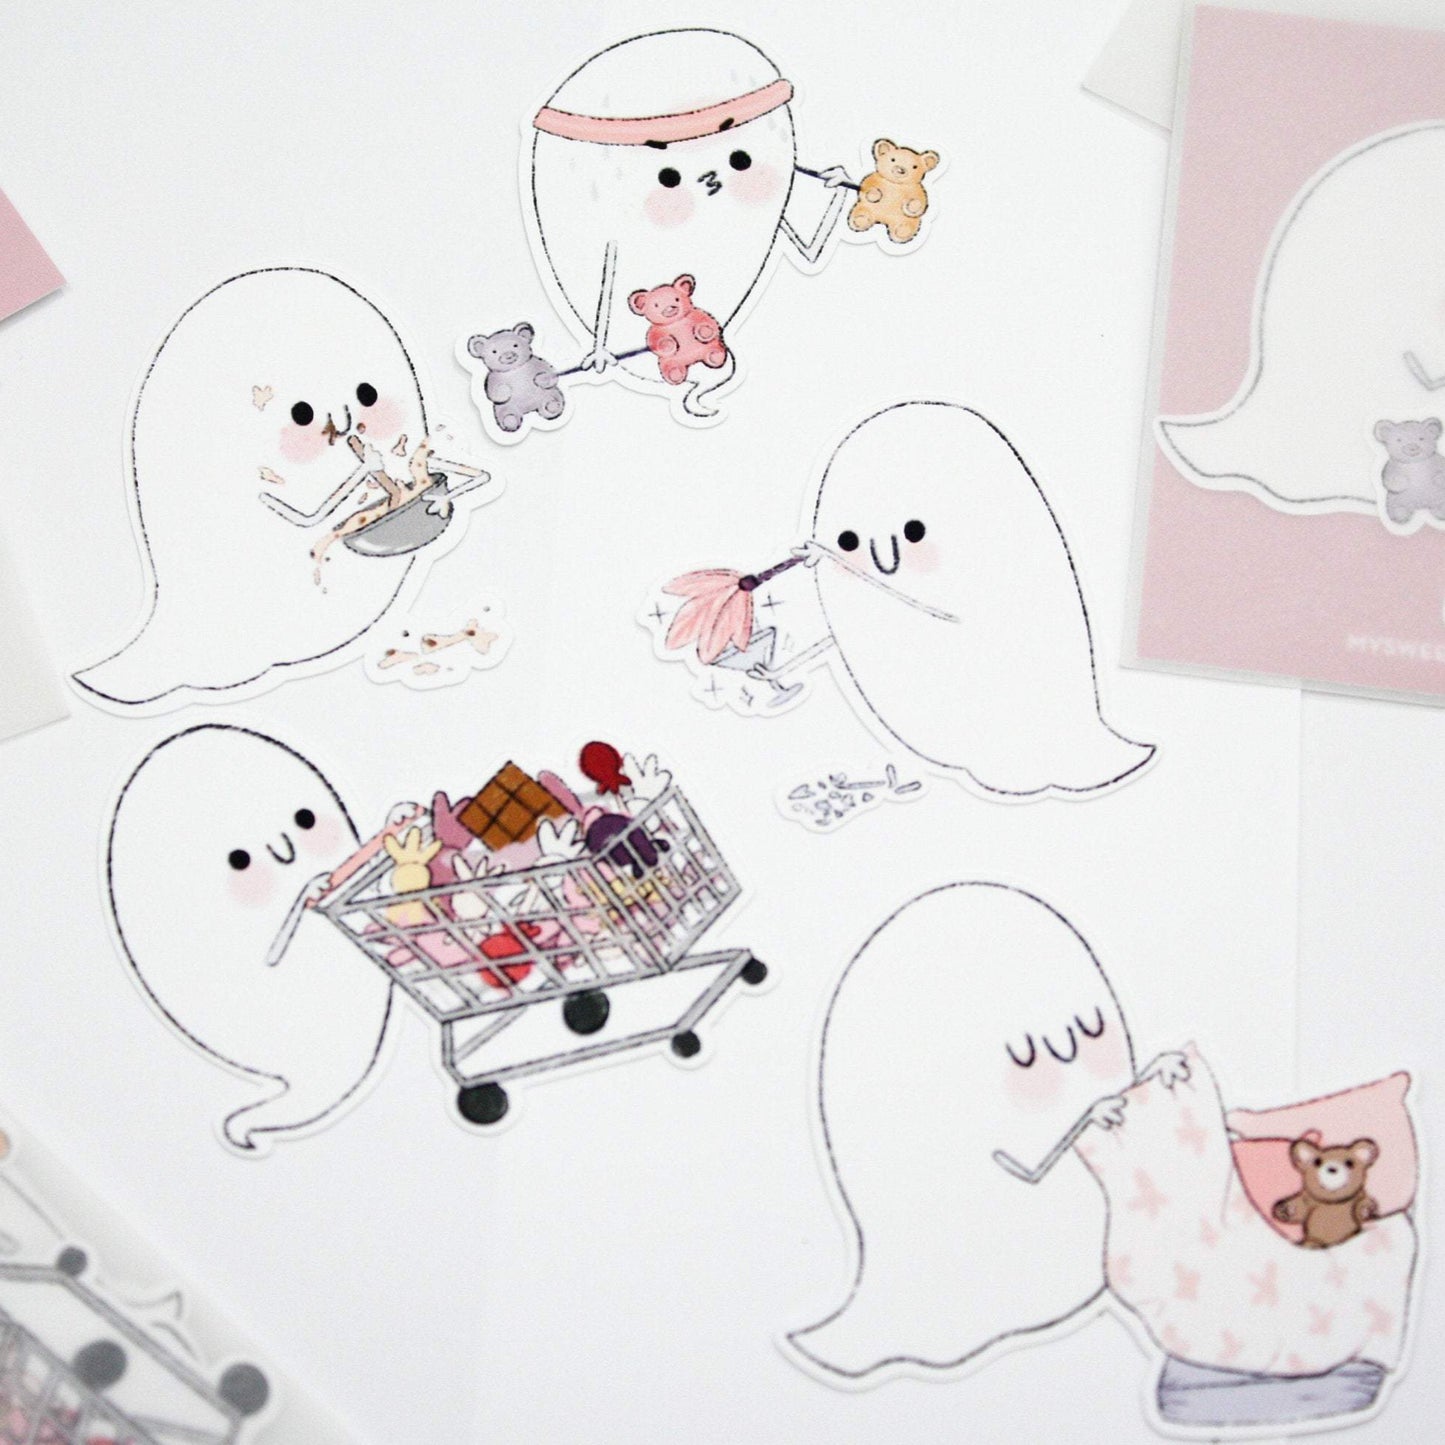 die cut ghost stickers